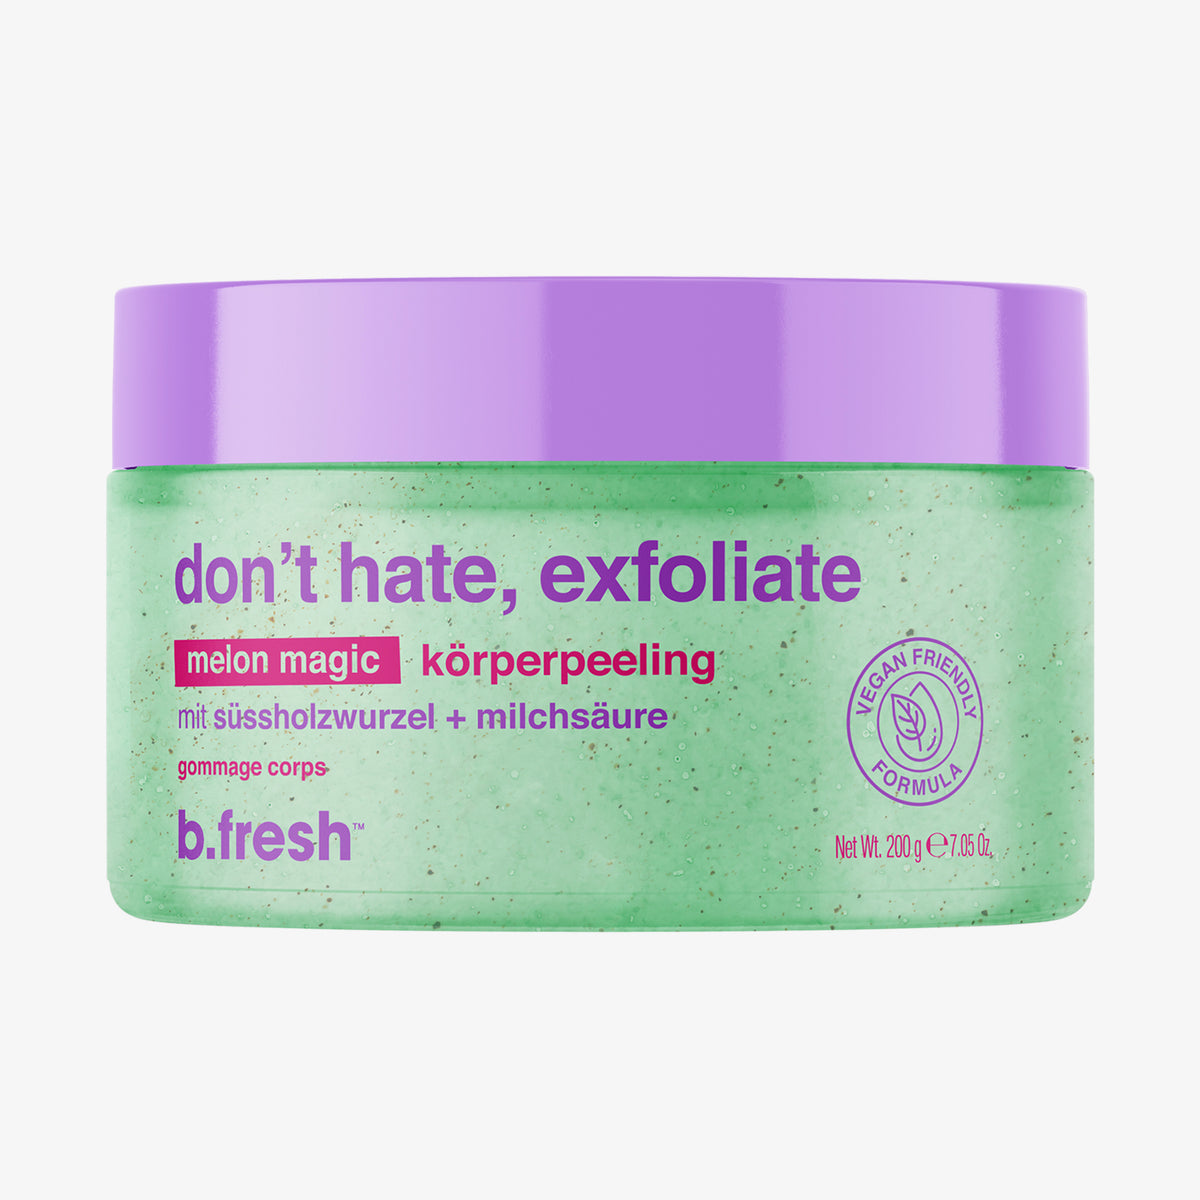 don't hate, exfoliate - body scrub